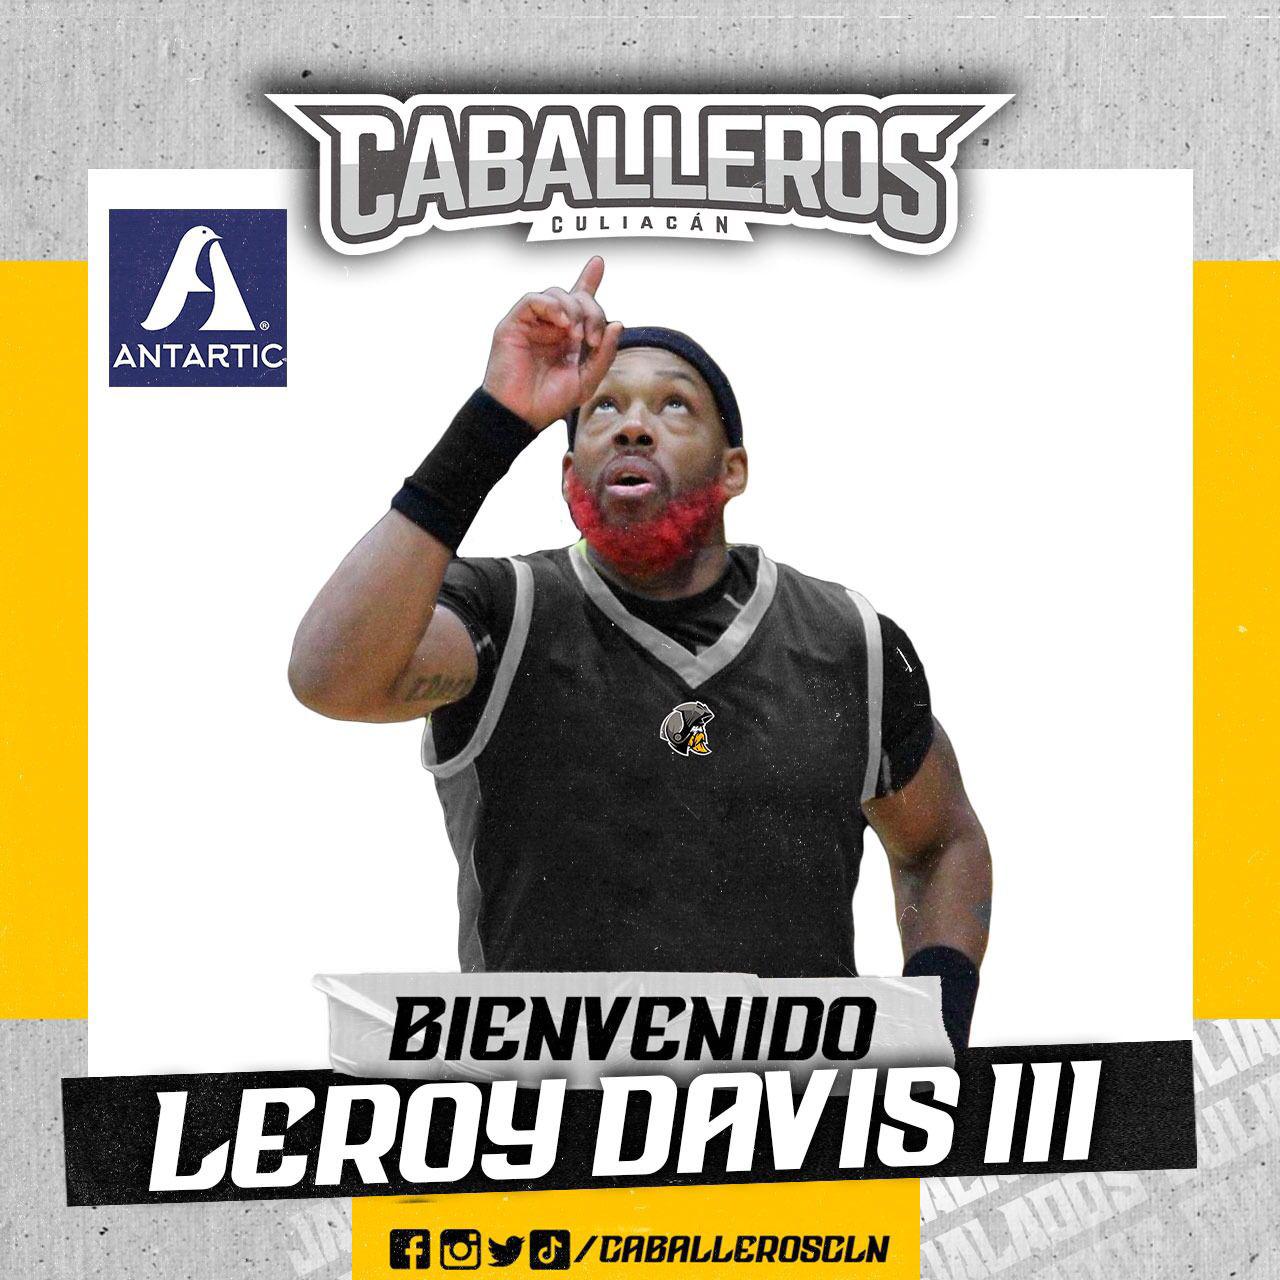 $!Leroy Davis III regresa a Caballeros de Culiacán